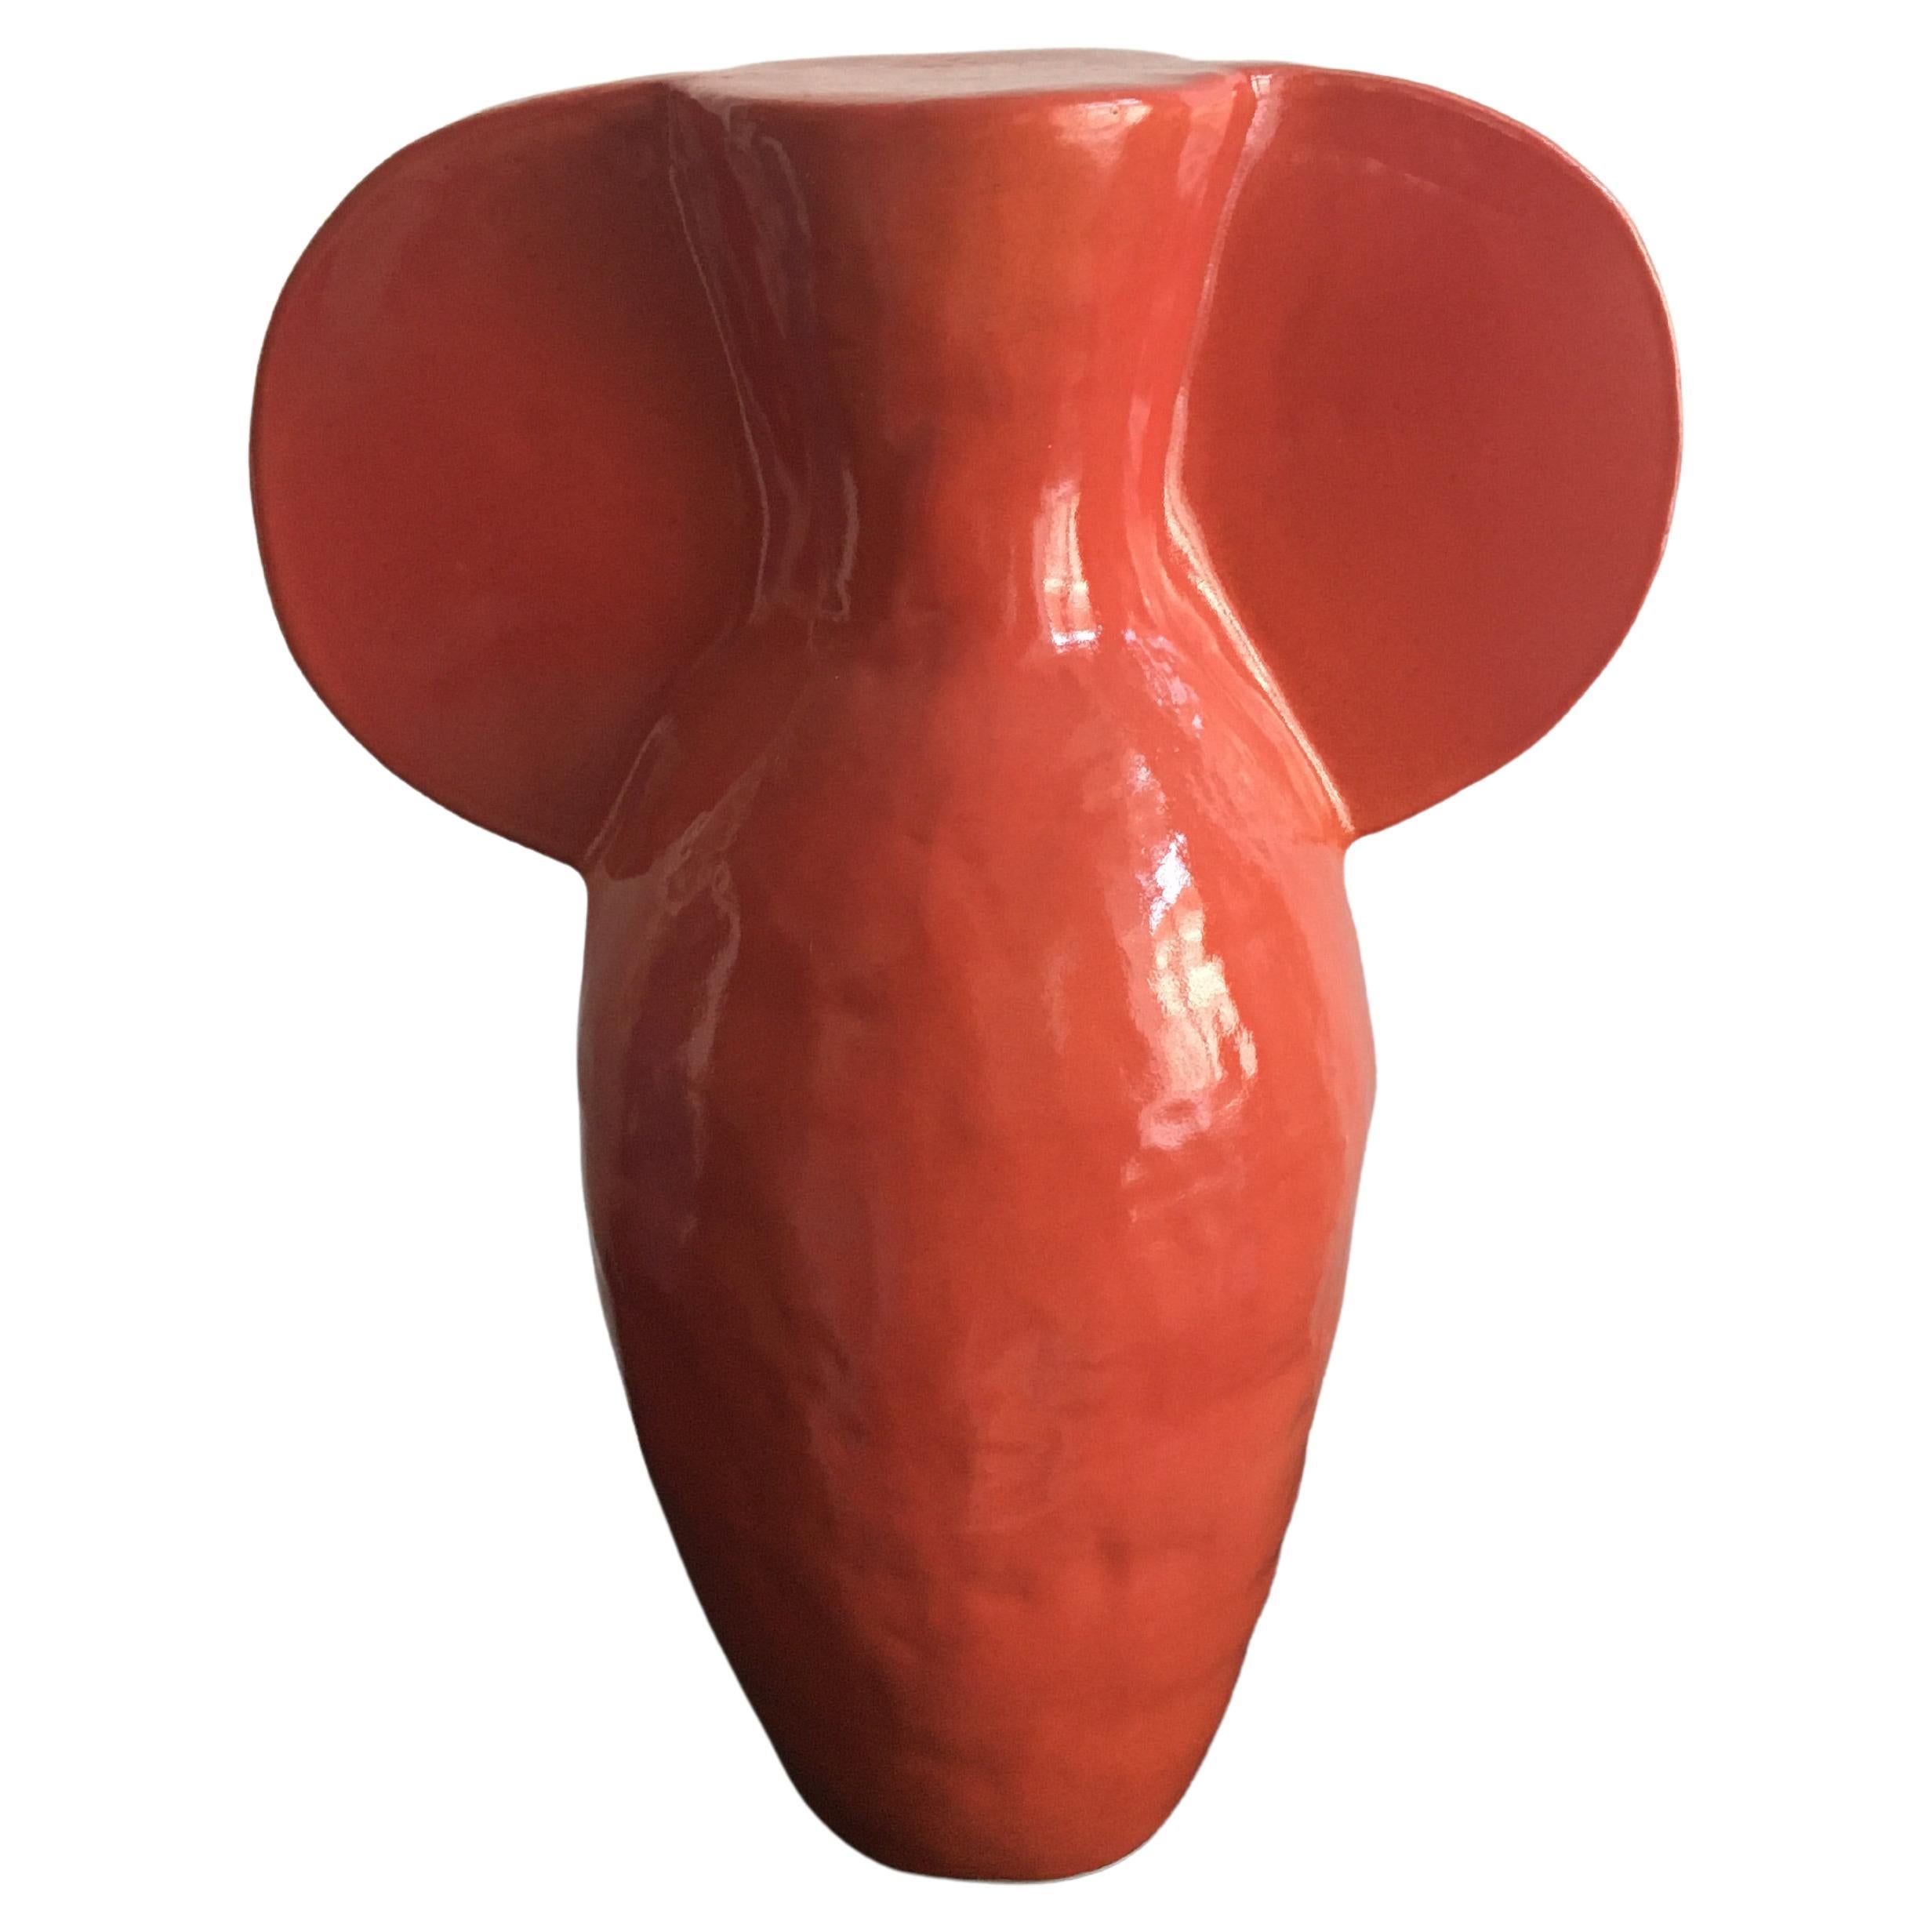 Skulptur-Vase von Maria Lenskjold